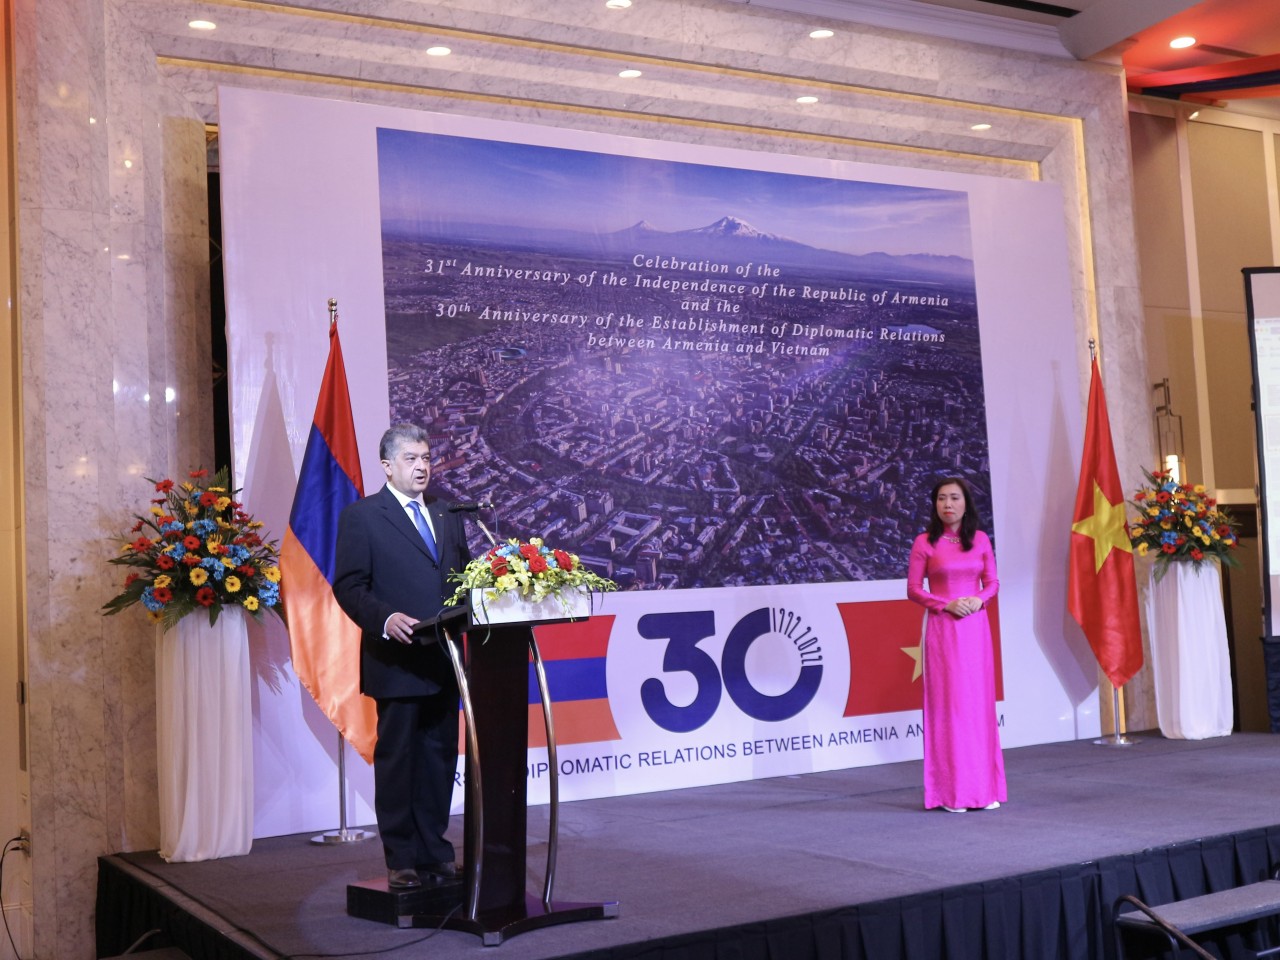 Quan hệ Việt Nam - Armenia: 30 năm phát triển bền vững và hữu nghị